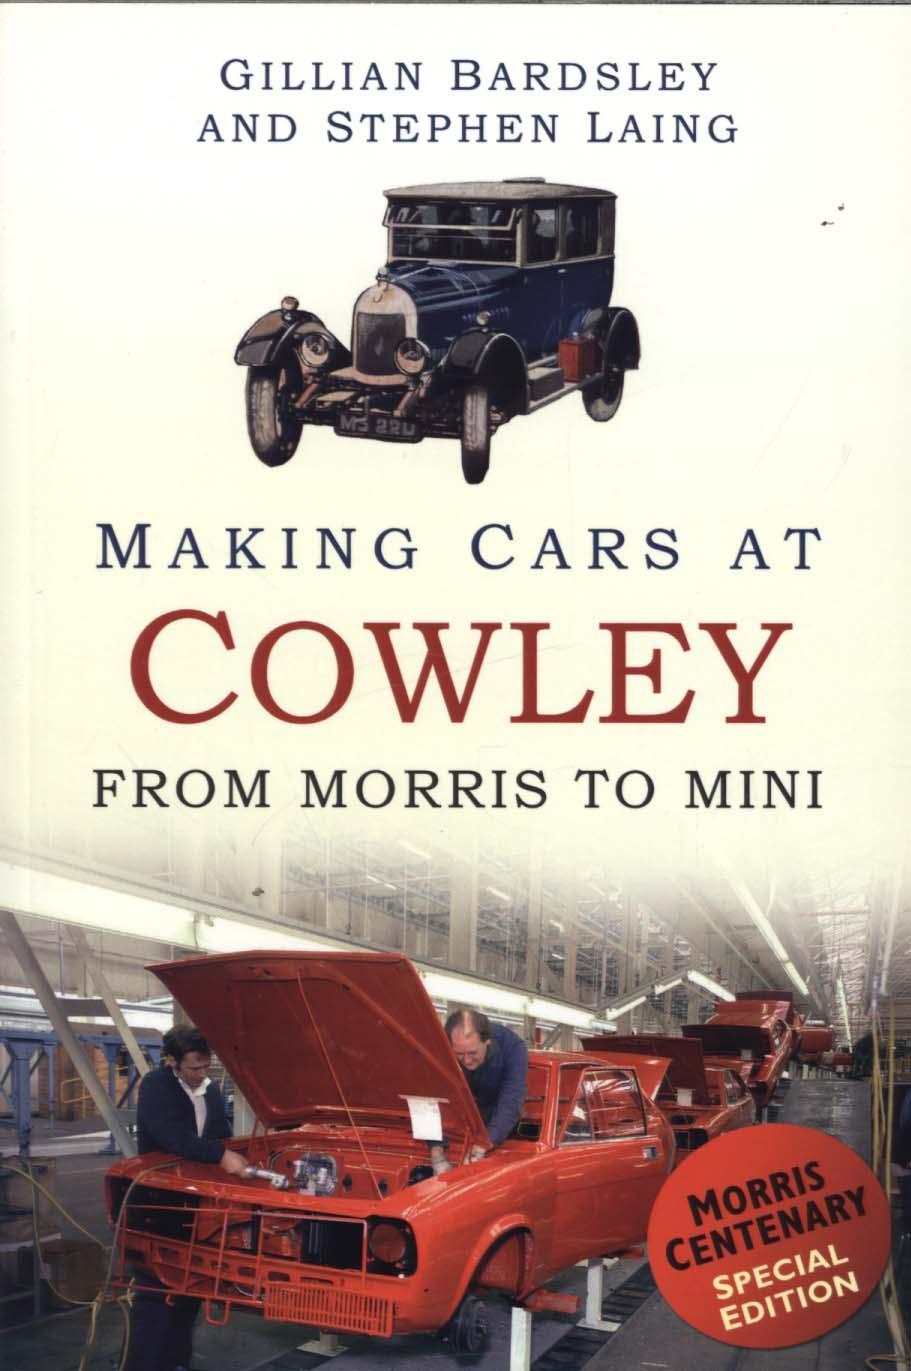 Making Cars at Cowley